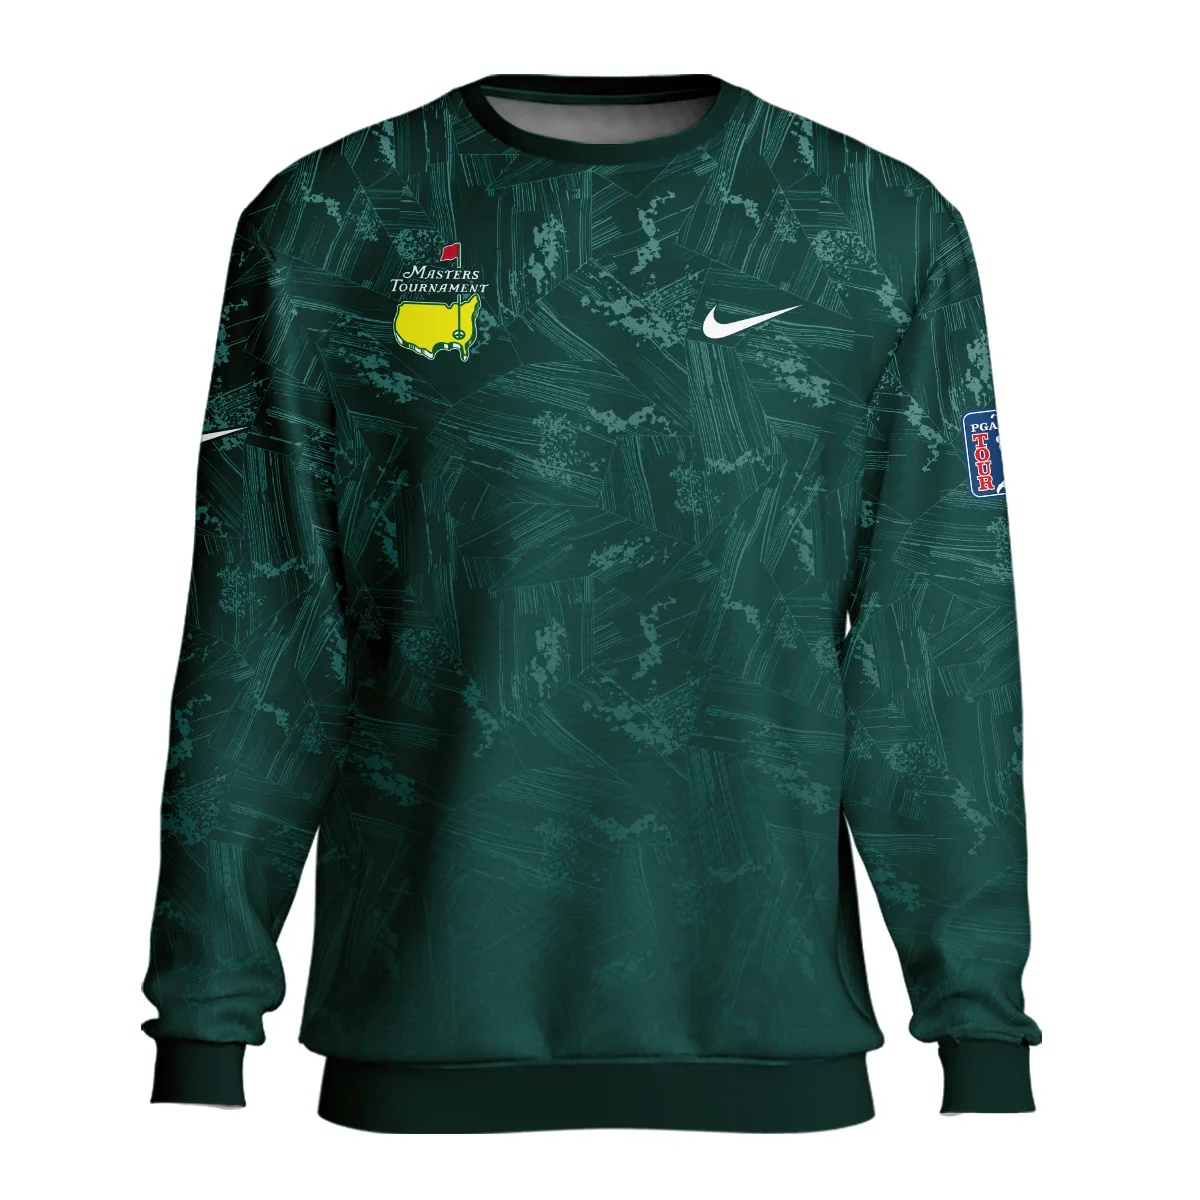 Dark Green Background Masters Tournament Nike Unisex Sweatshirt Style Classic Sweatshirt